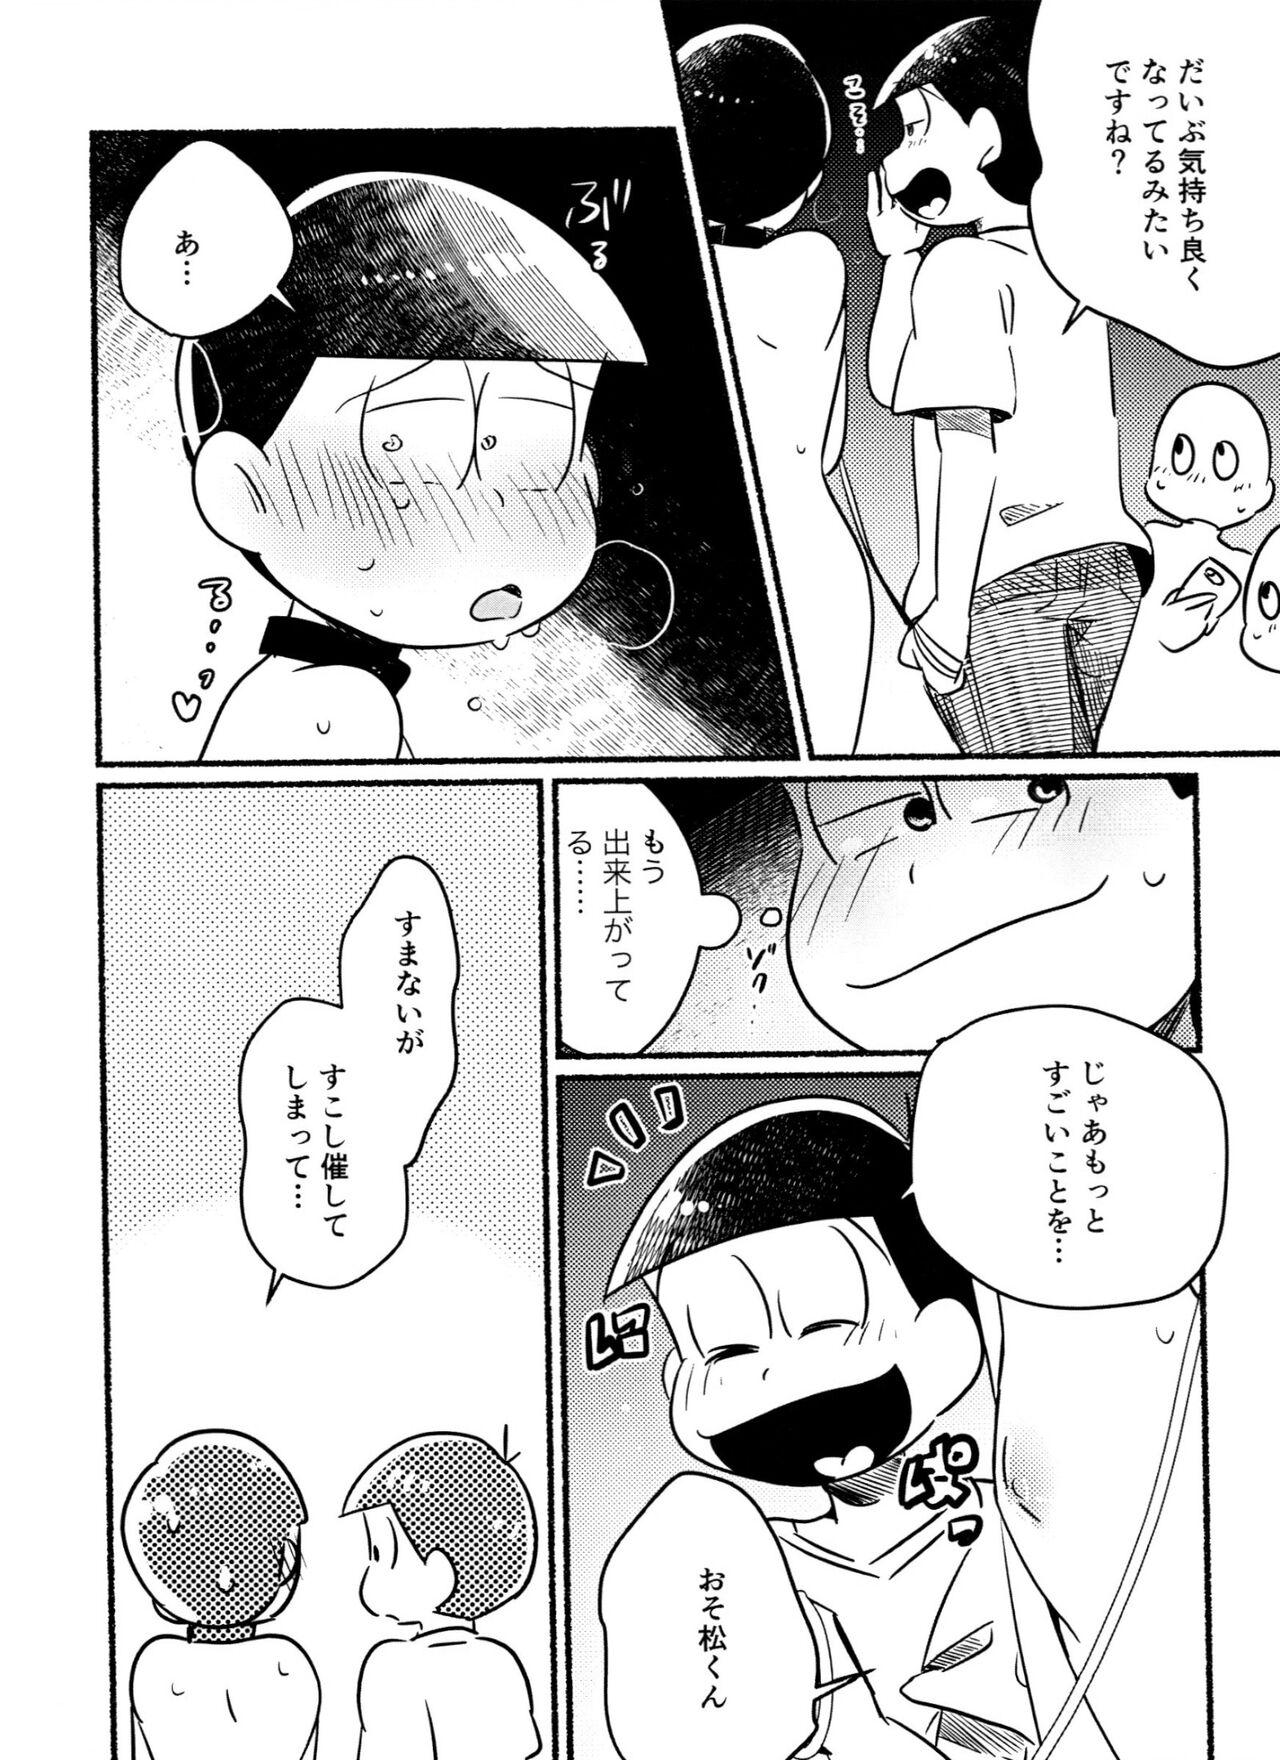 Goth Choromatsu Keibu ga Zenra de Yoru no Osanpo Shuujinkanshi no Naka xxxx Shichau R18 no Hon - Osomatsu-san Orgasm - Page 12